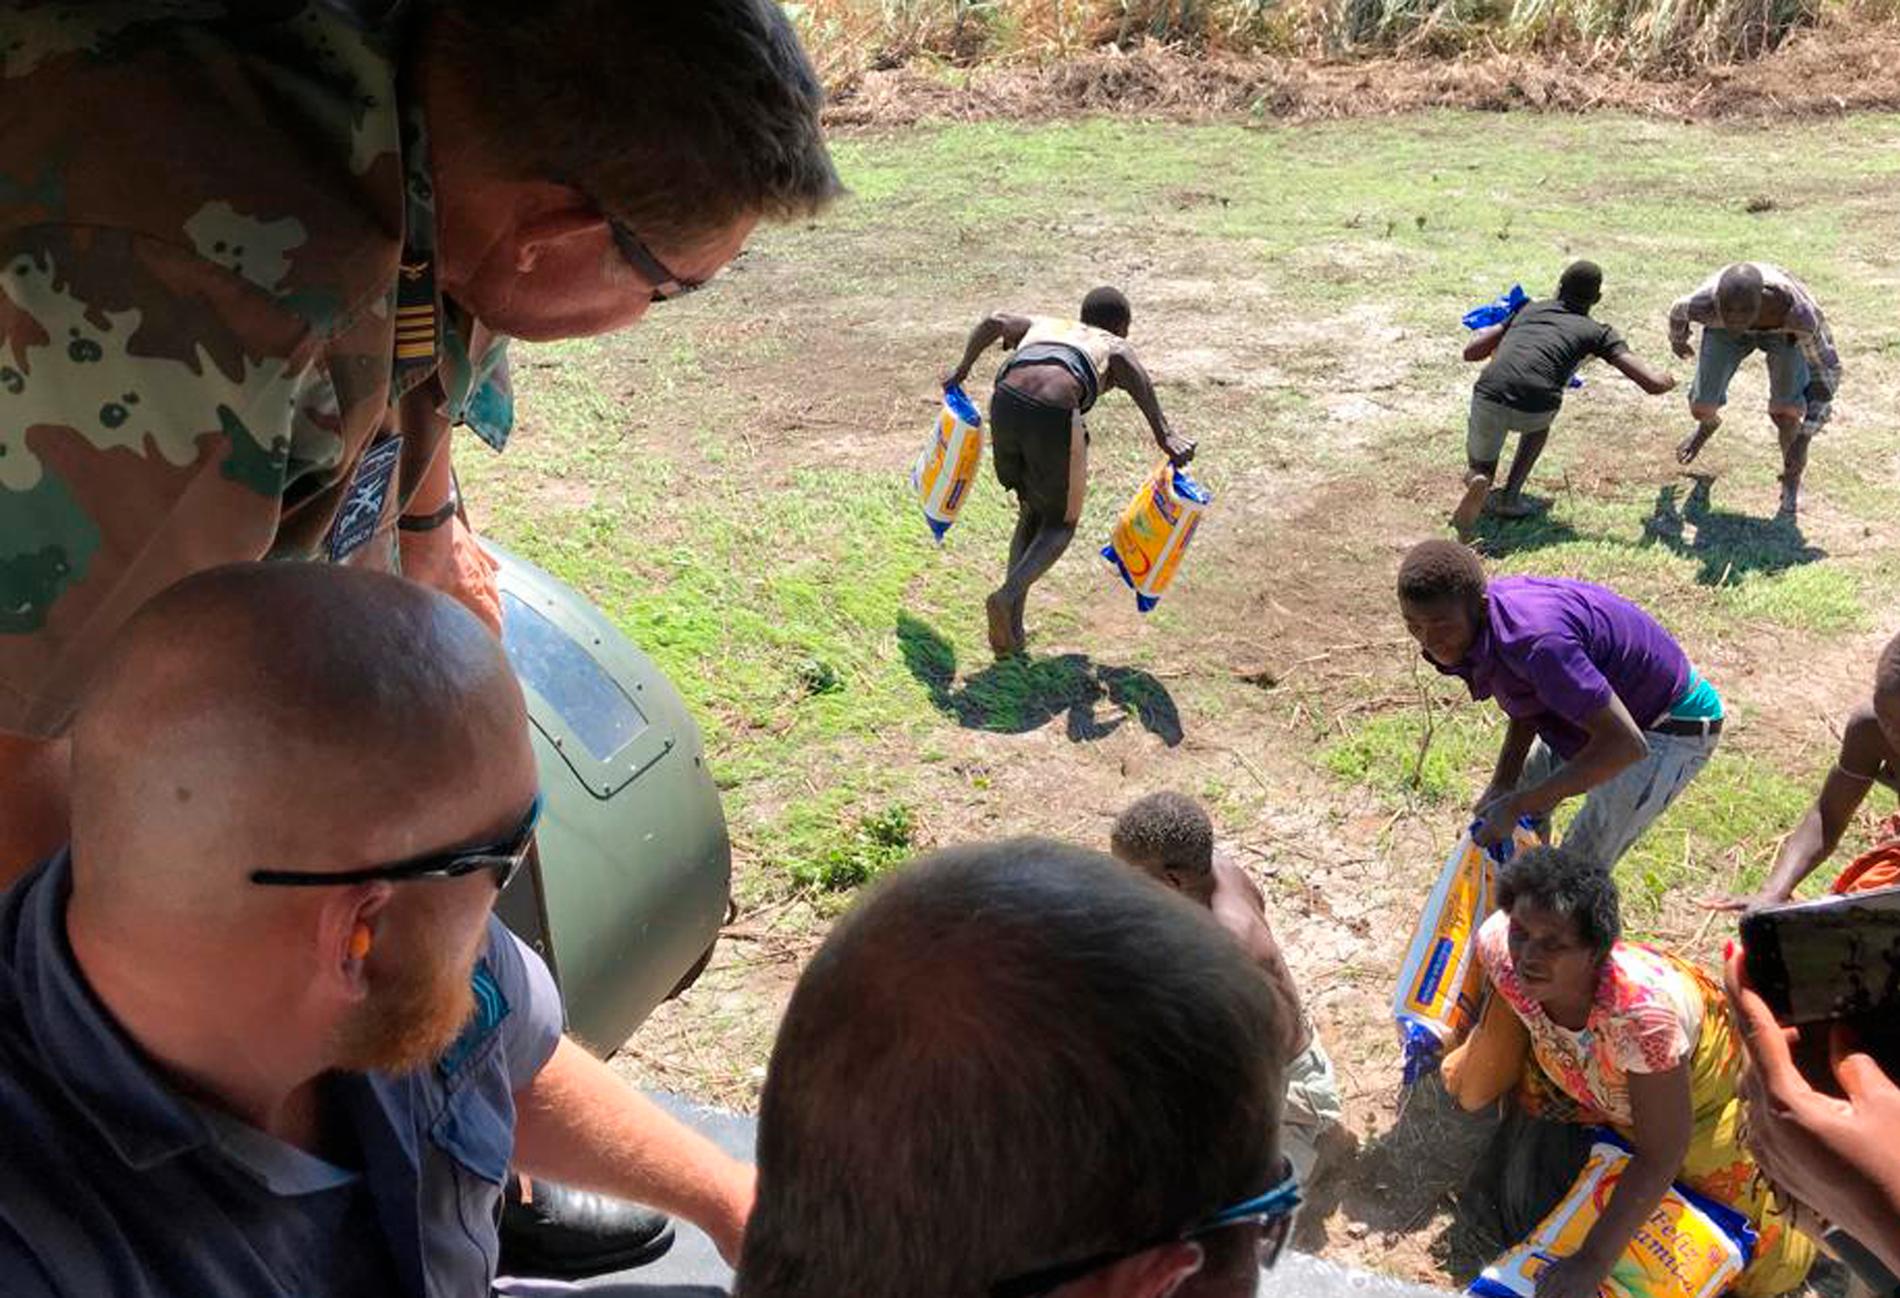 Sydafrikansk militär levererar nödhjälp tidigare i april till drabbade av Idais framfart i Moçambique. Efter cyklonen har kolera och hunger slagit mot den krisdrabbade befolkningen.